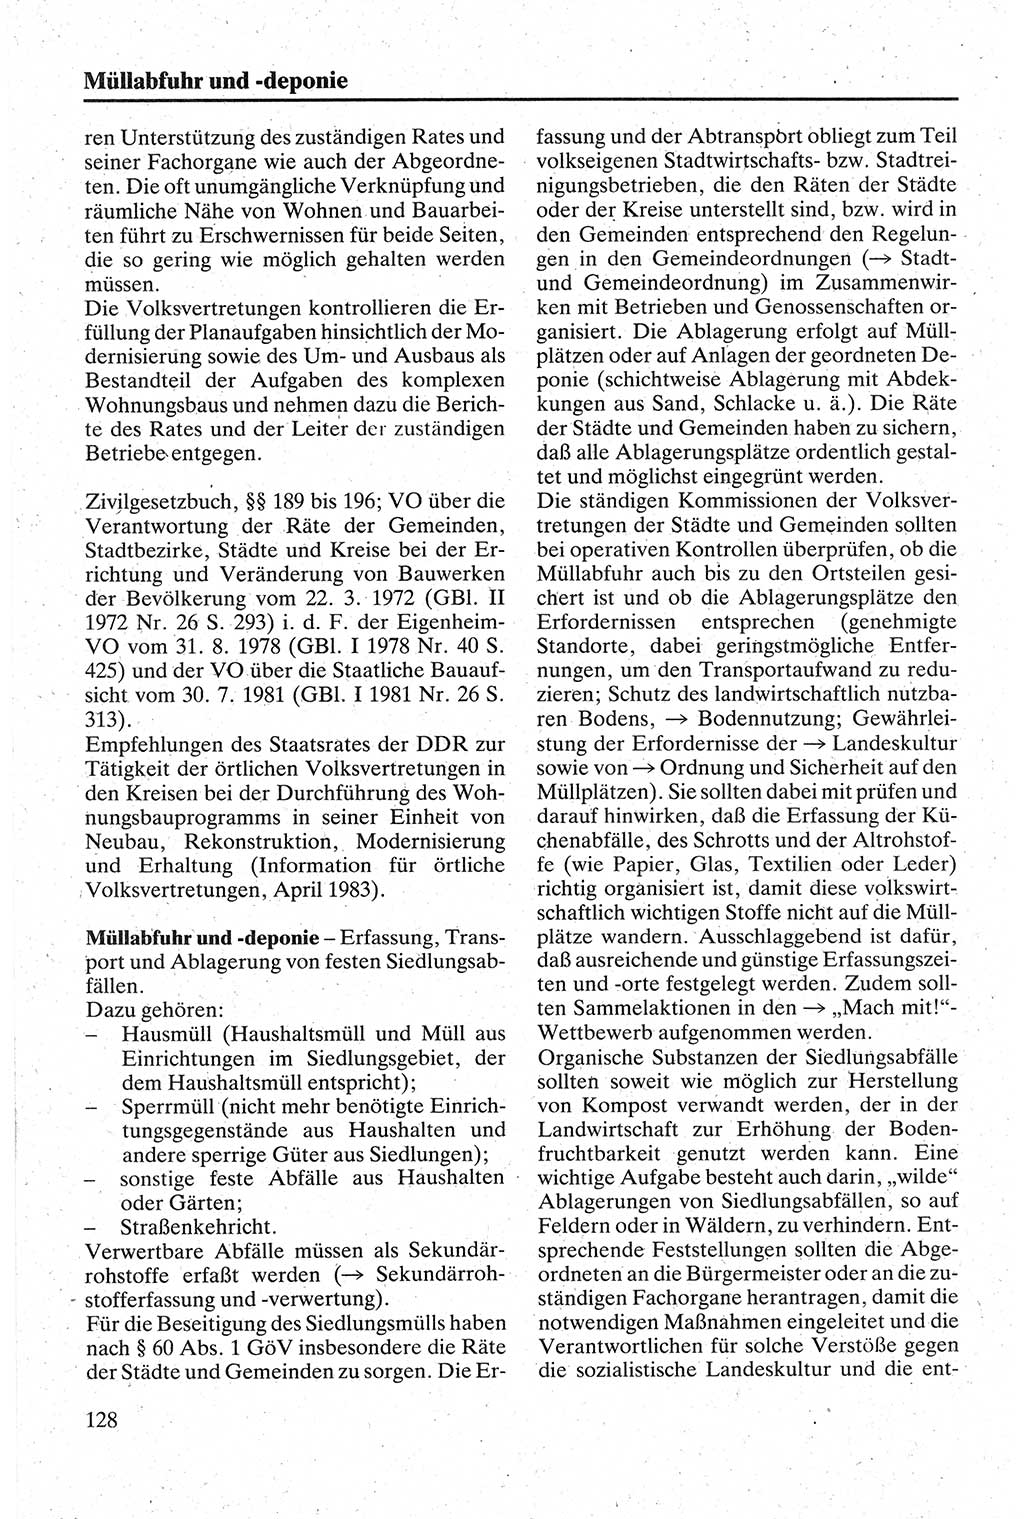 Handbuch für den Abgeordneten [Deutsche Demokratische Republik (DDR)] 1984, Seite 128 (Hb. Abg. DDR 1984, S. 128)